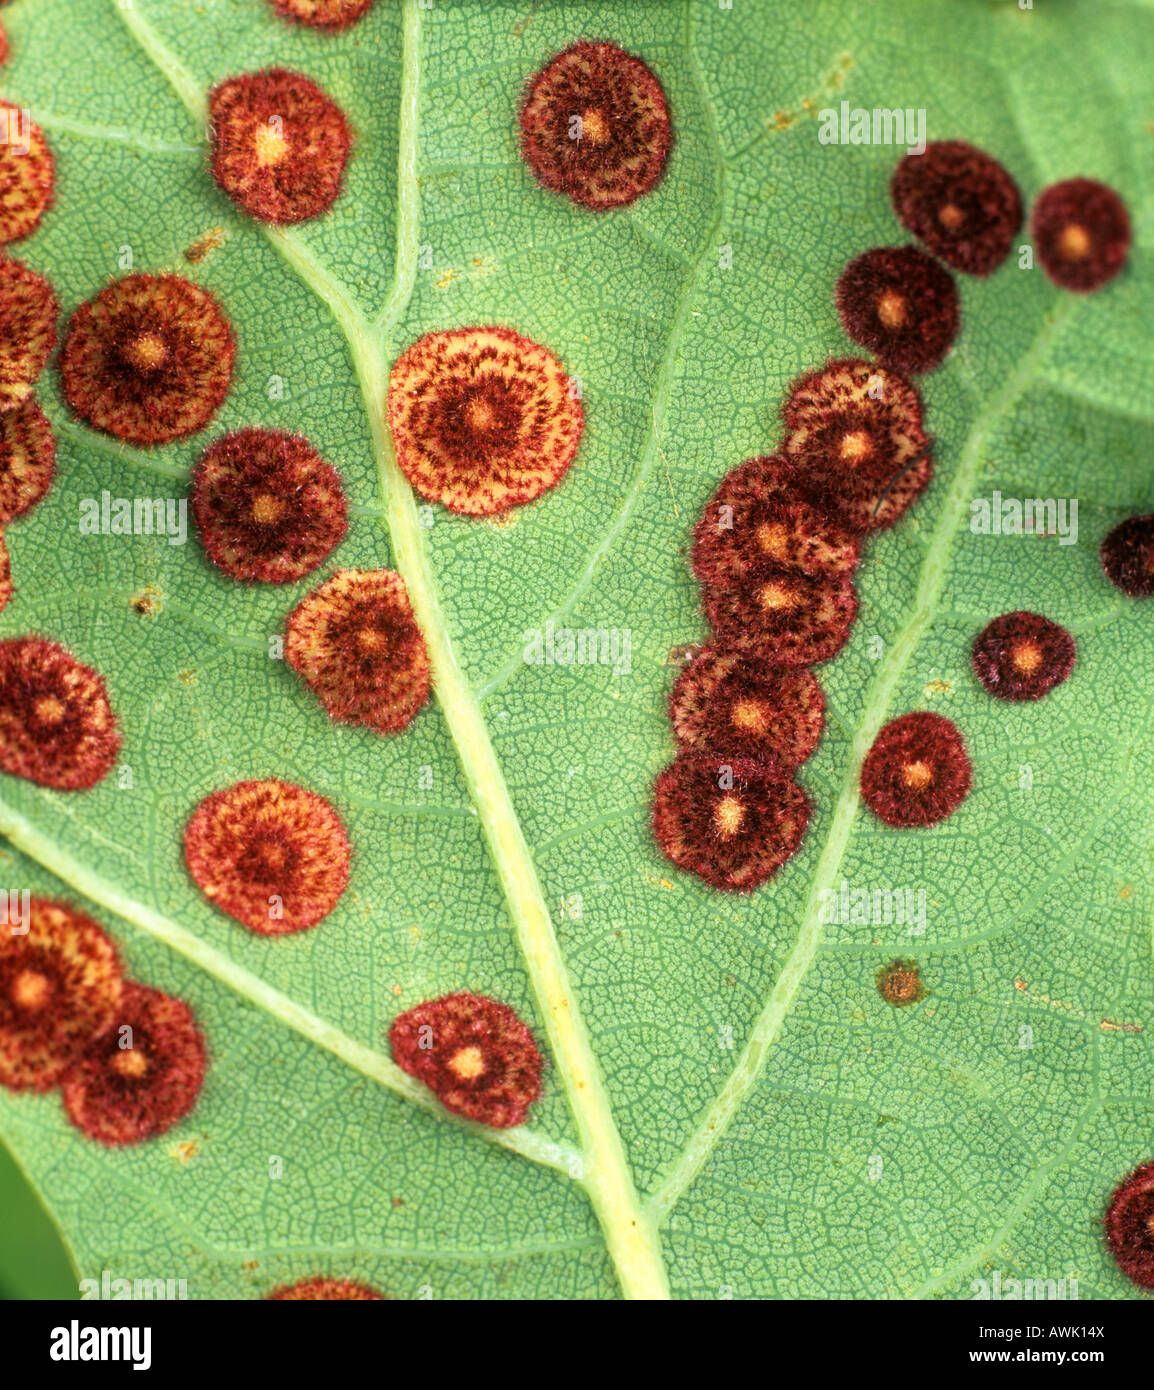 Spangle feuille de chêne cynips Neuroterus quercusbaccarum gall galles sur la face inférieure des feuilles de chêne Banque D'Images